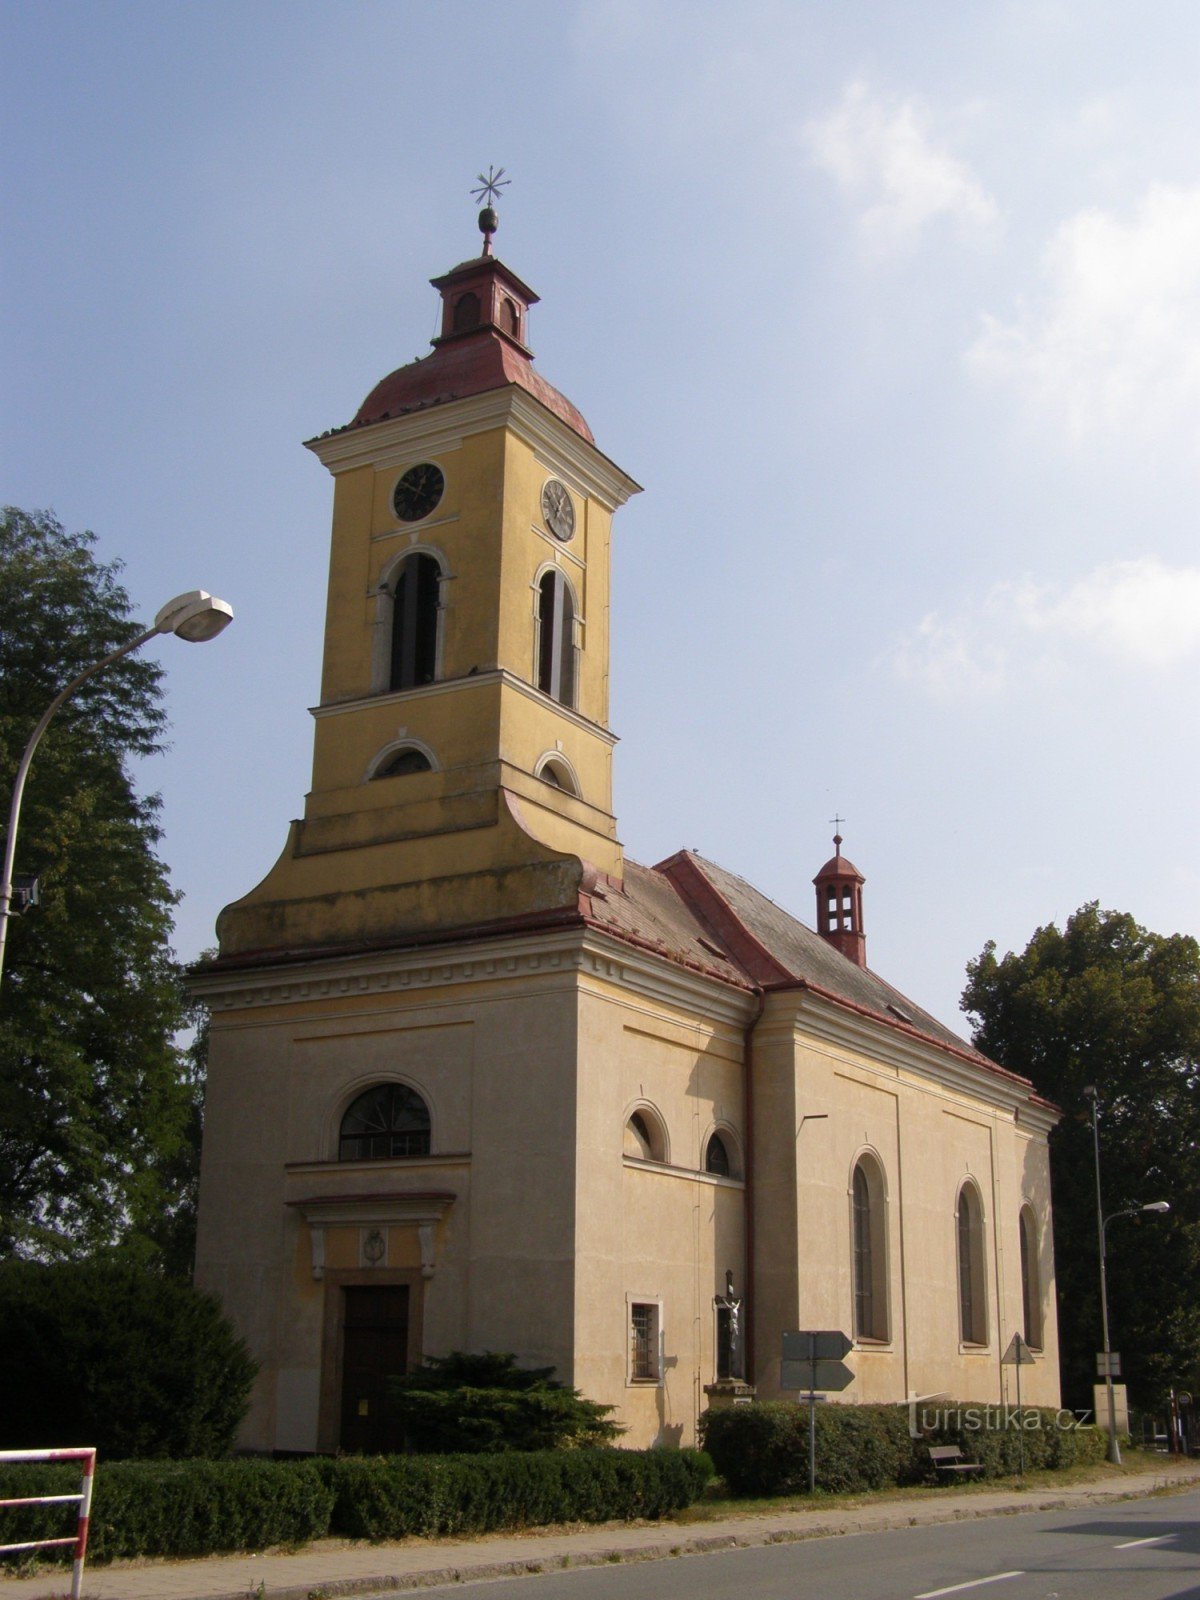 Štězery - kyrkan St. Mark